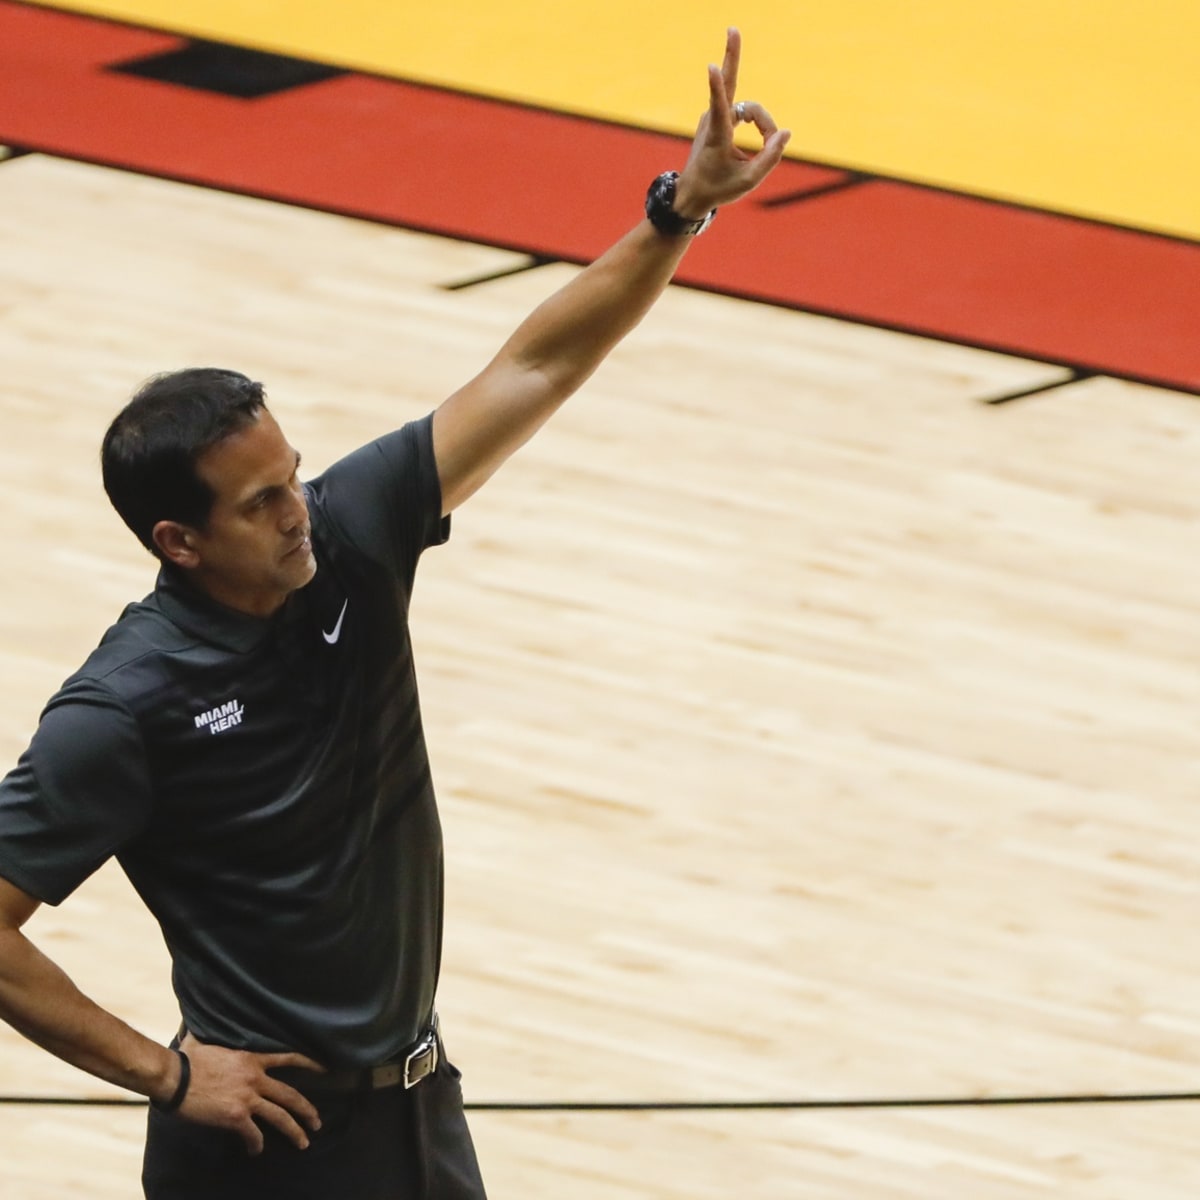 Miami's Erik Spoelstra to help coach USA Basketball select team in Vegas